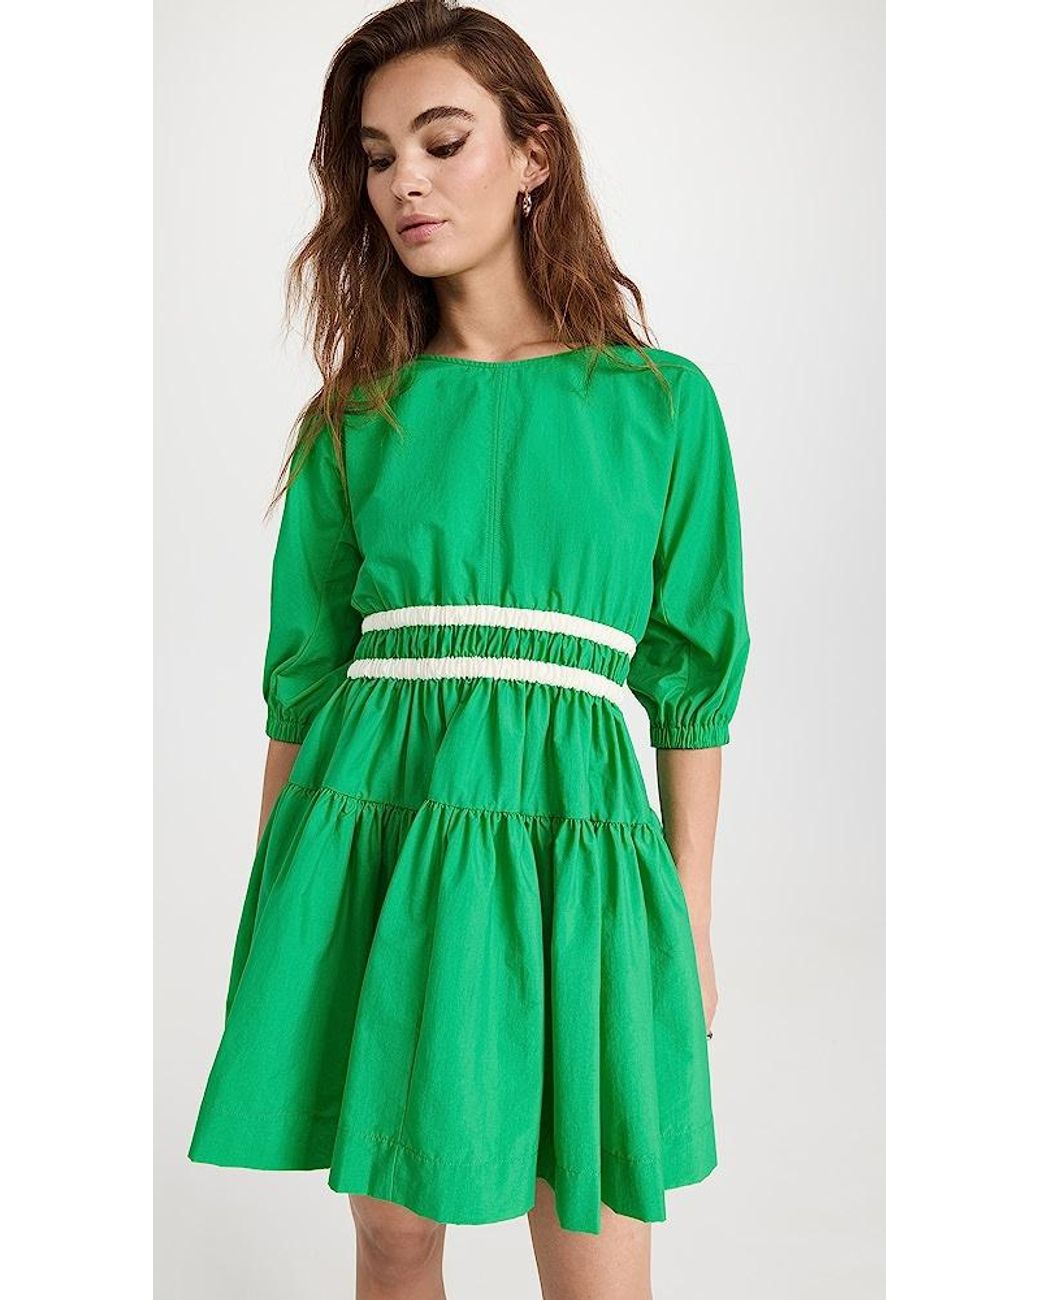 Molly Goddard Tiffany Dress in Green | Lyst